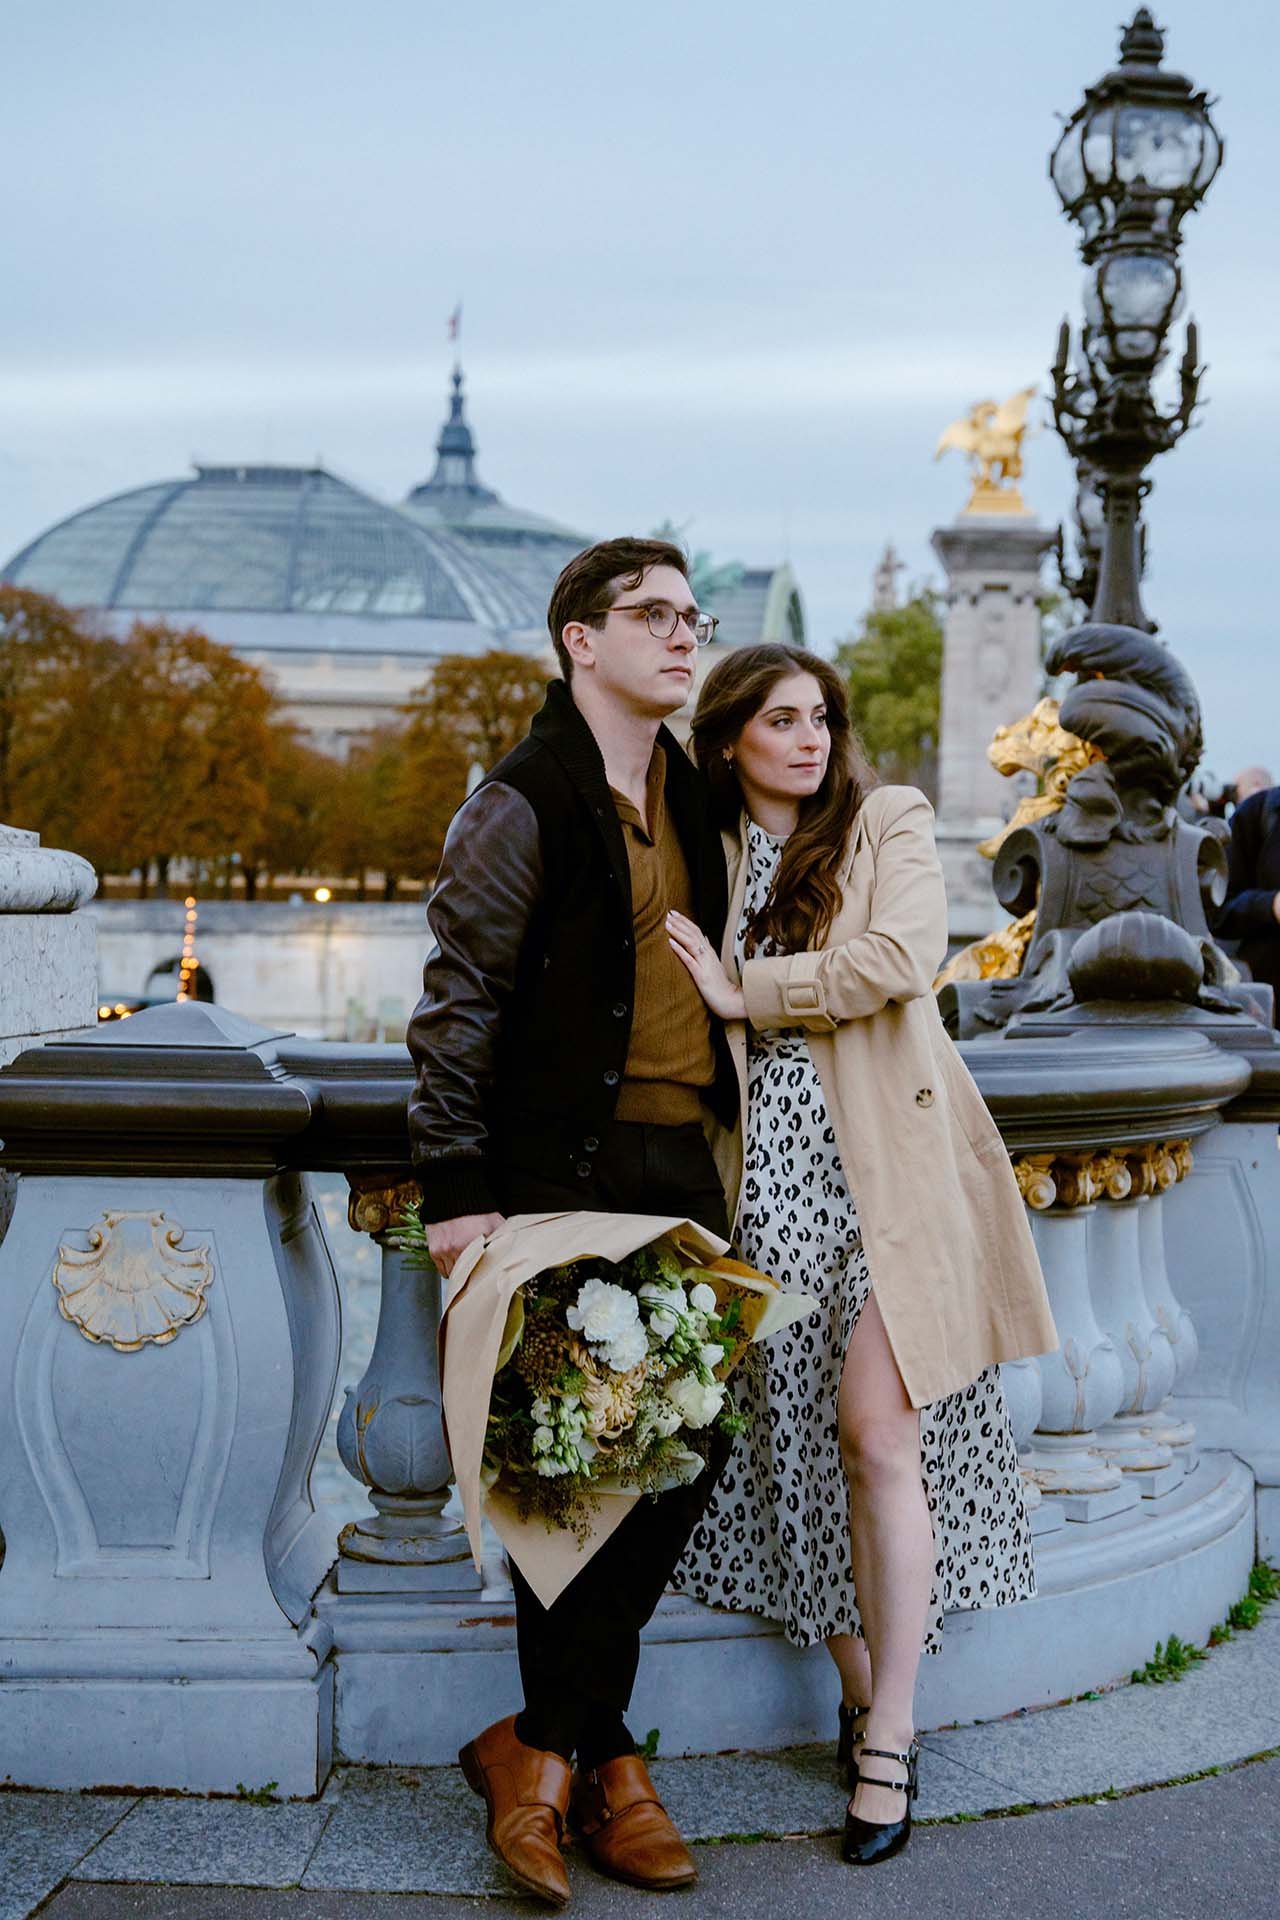 Surprise Proposal and Engagement Photoshoot on Alexander 3 Bridge Paris